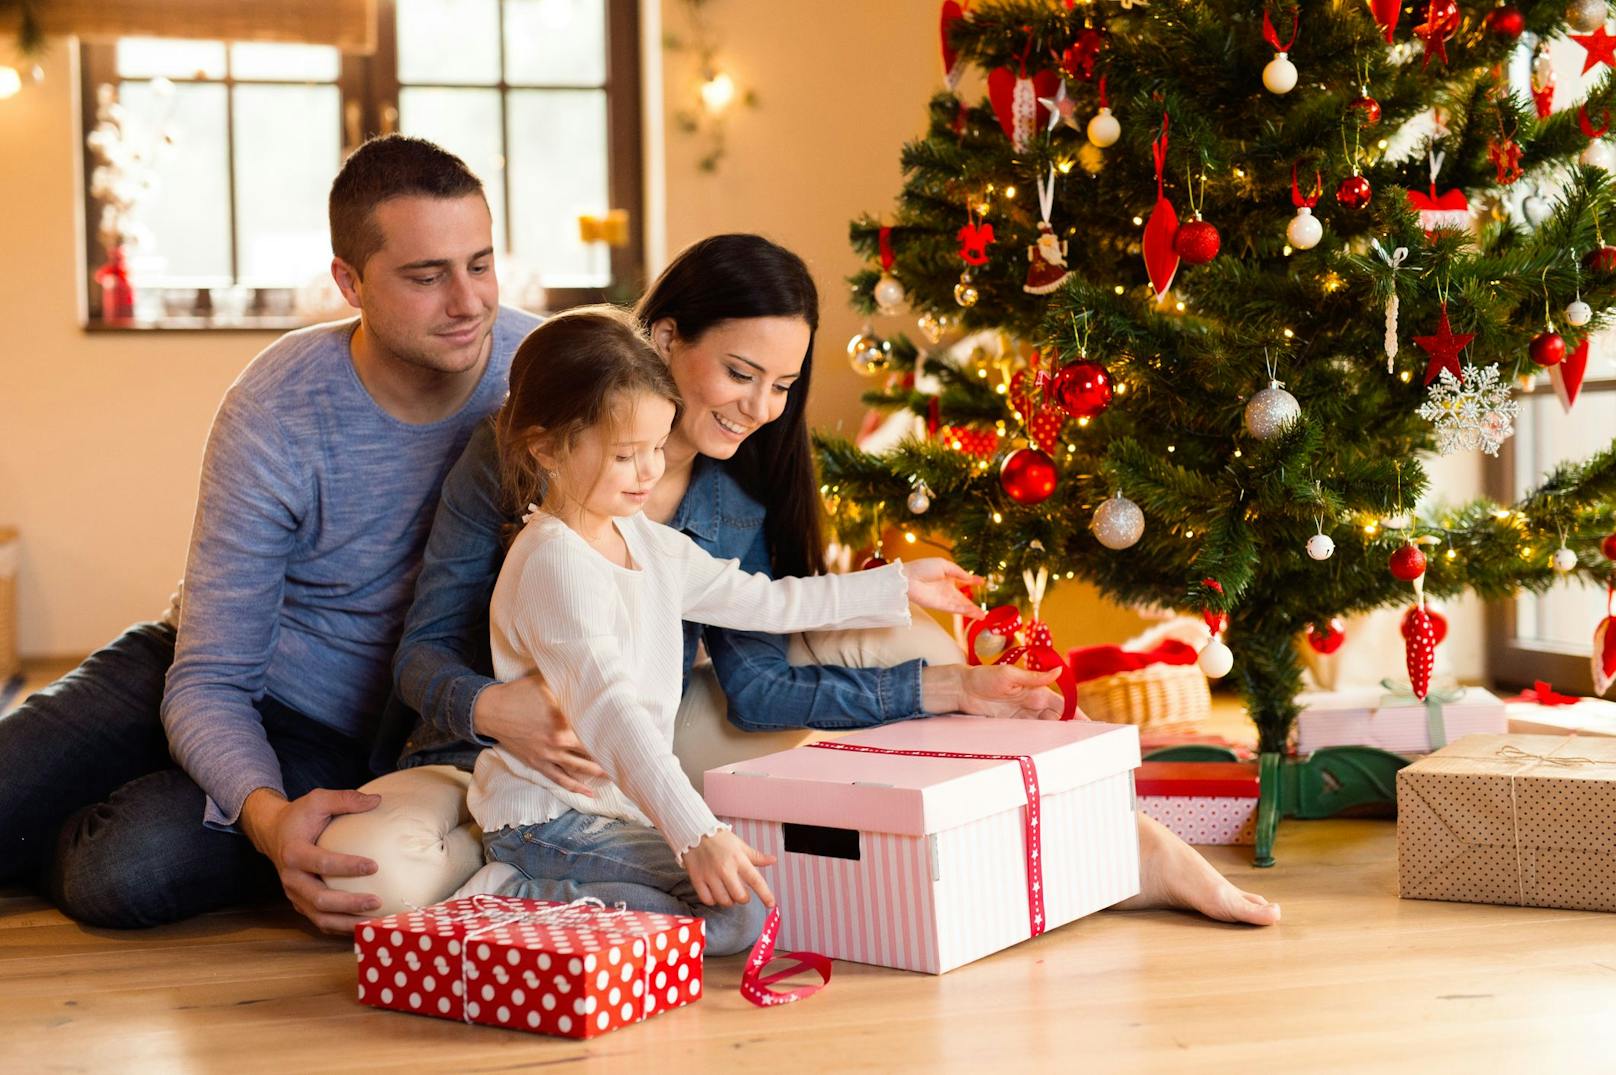 Experten warnen: Die Freude übers Weihnachtsgeschenk kann schnell ein böses Ende nehmen.